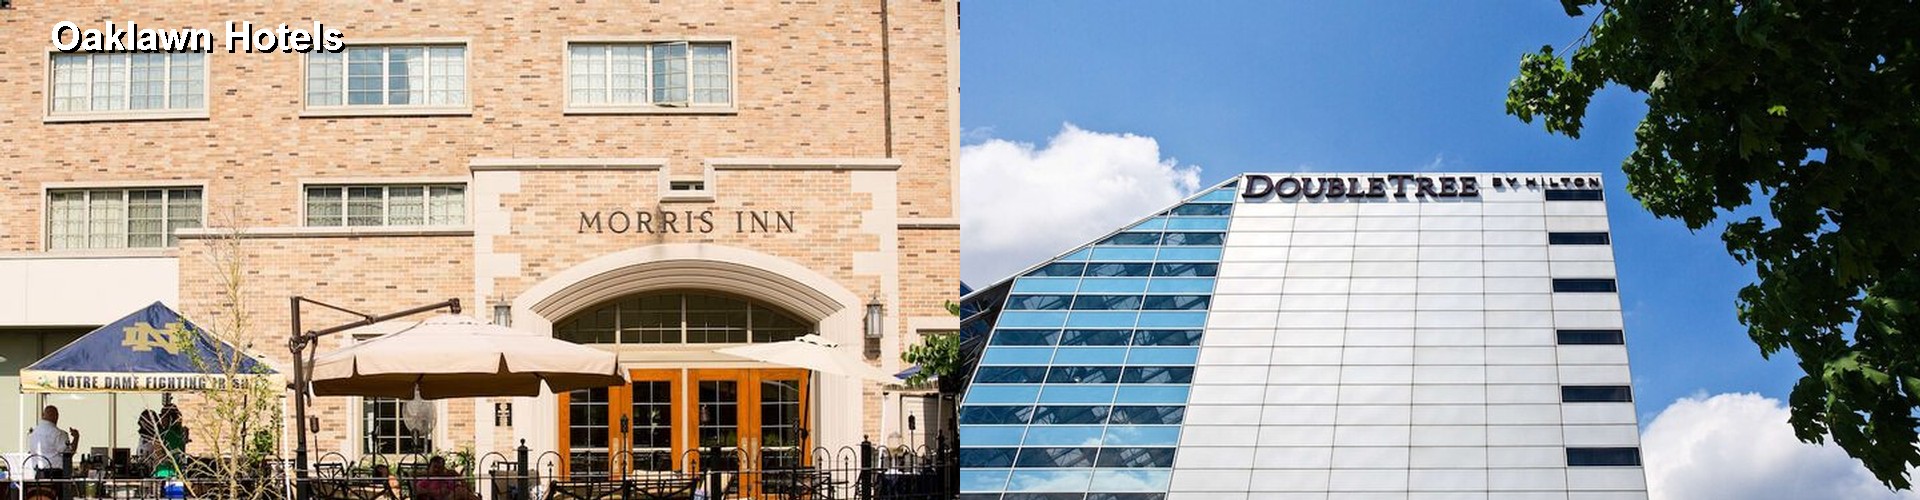 5 Best Hotels near Oaklawn